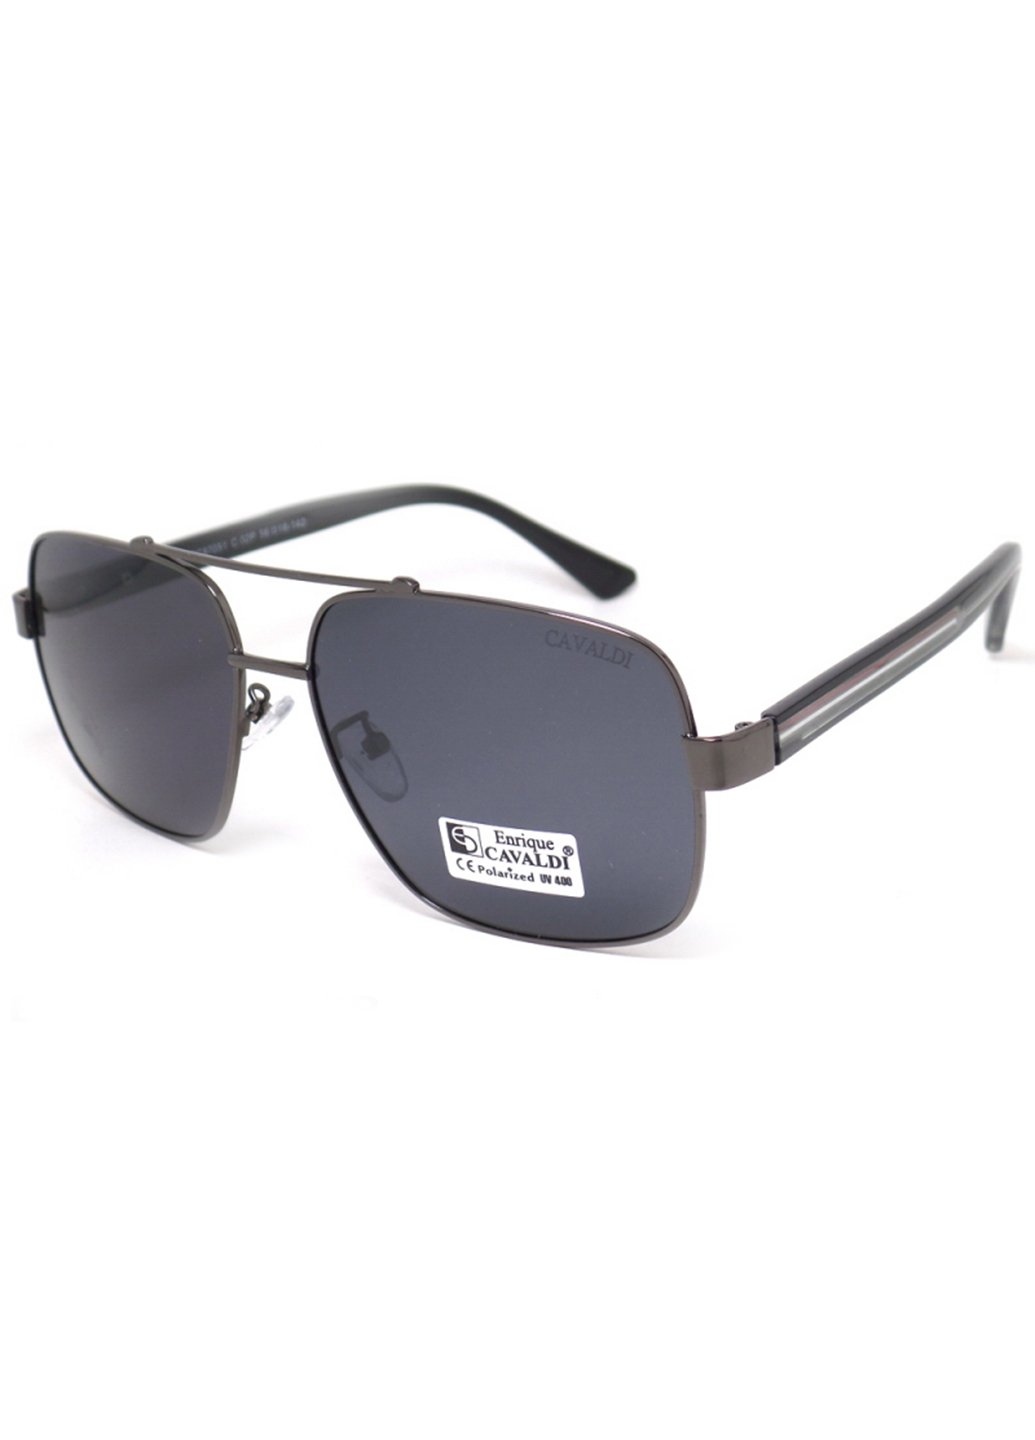 Купить Мужские солнцезащитные очки Enrique Cavaldi EC87051 150002 - Черный в интернет-магазине